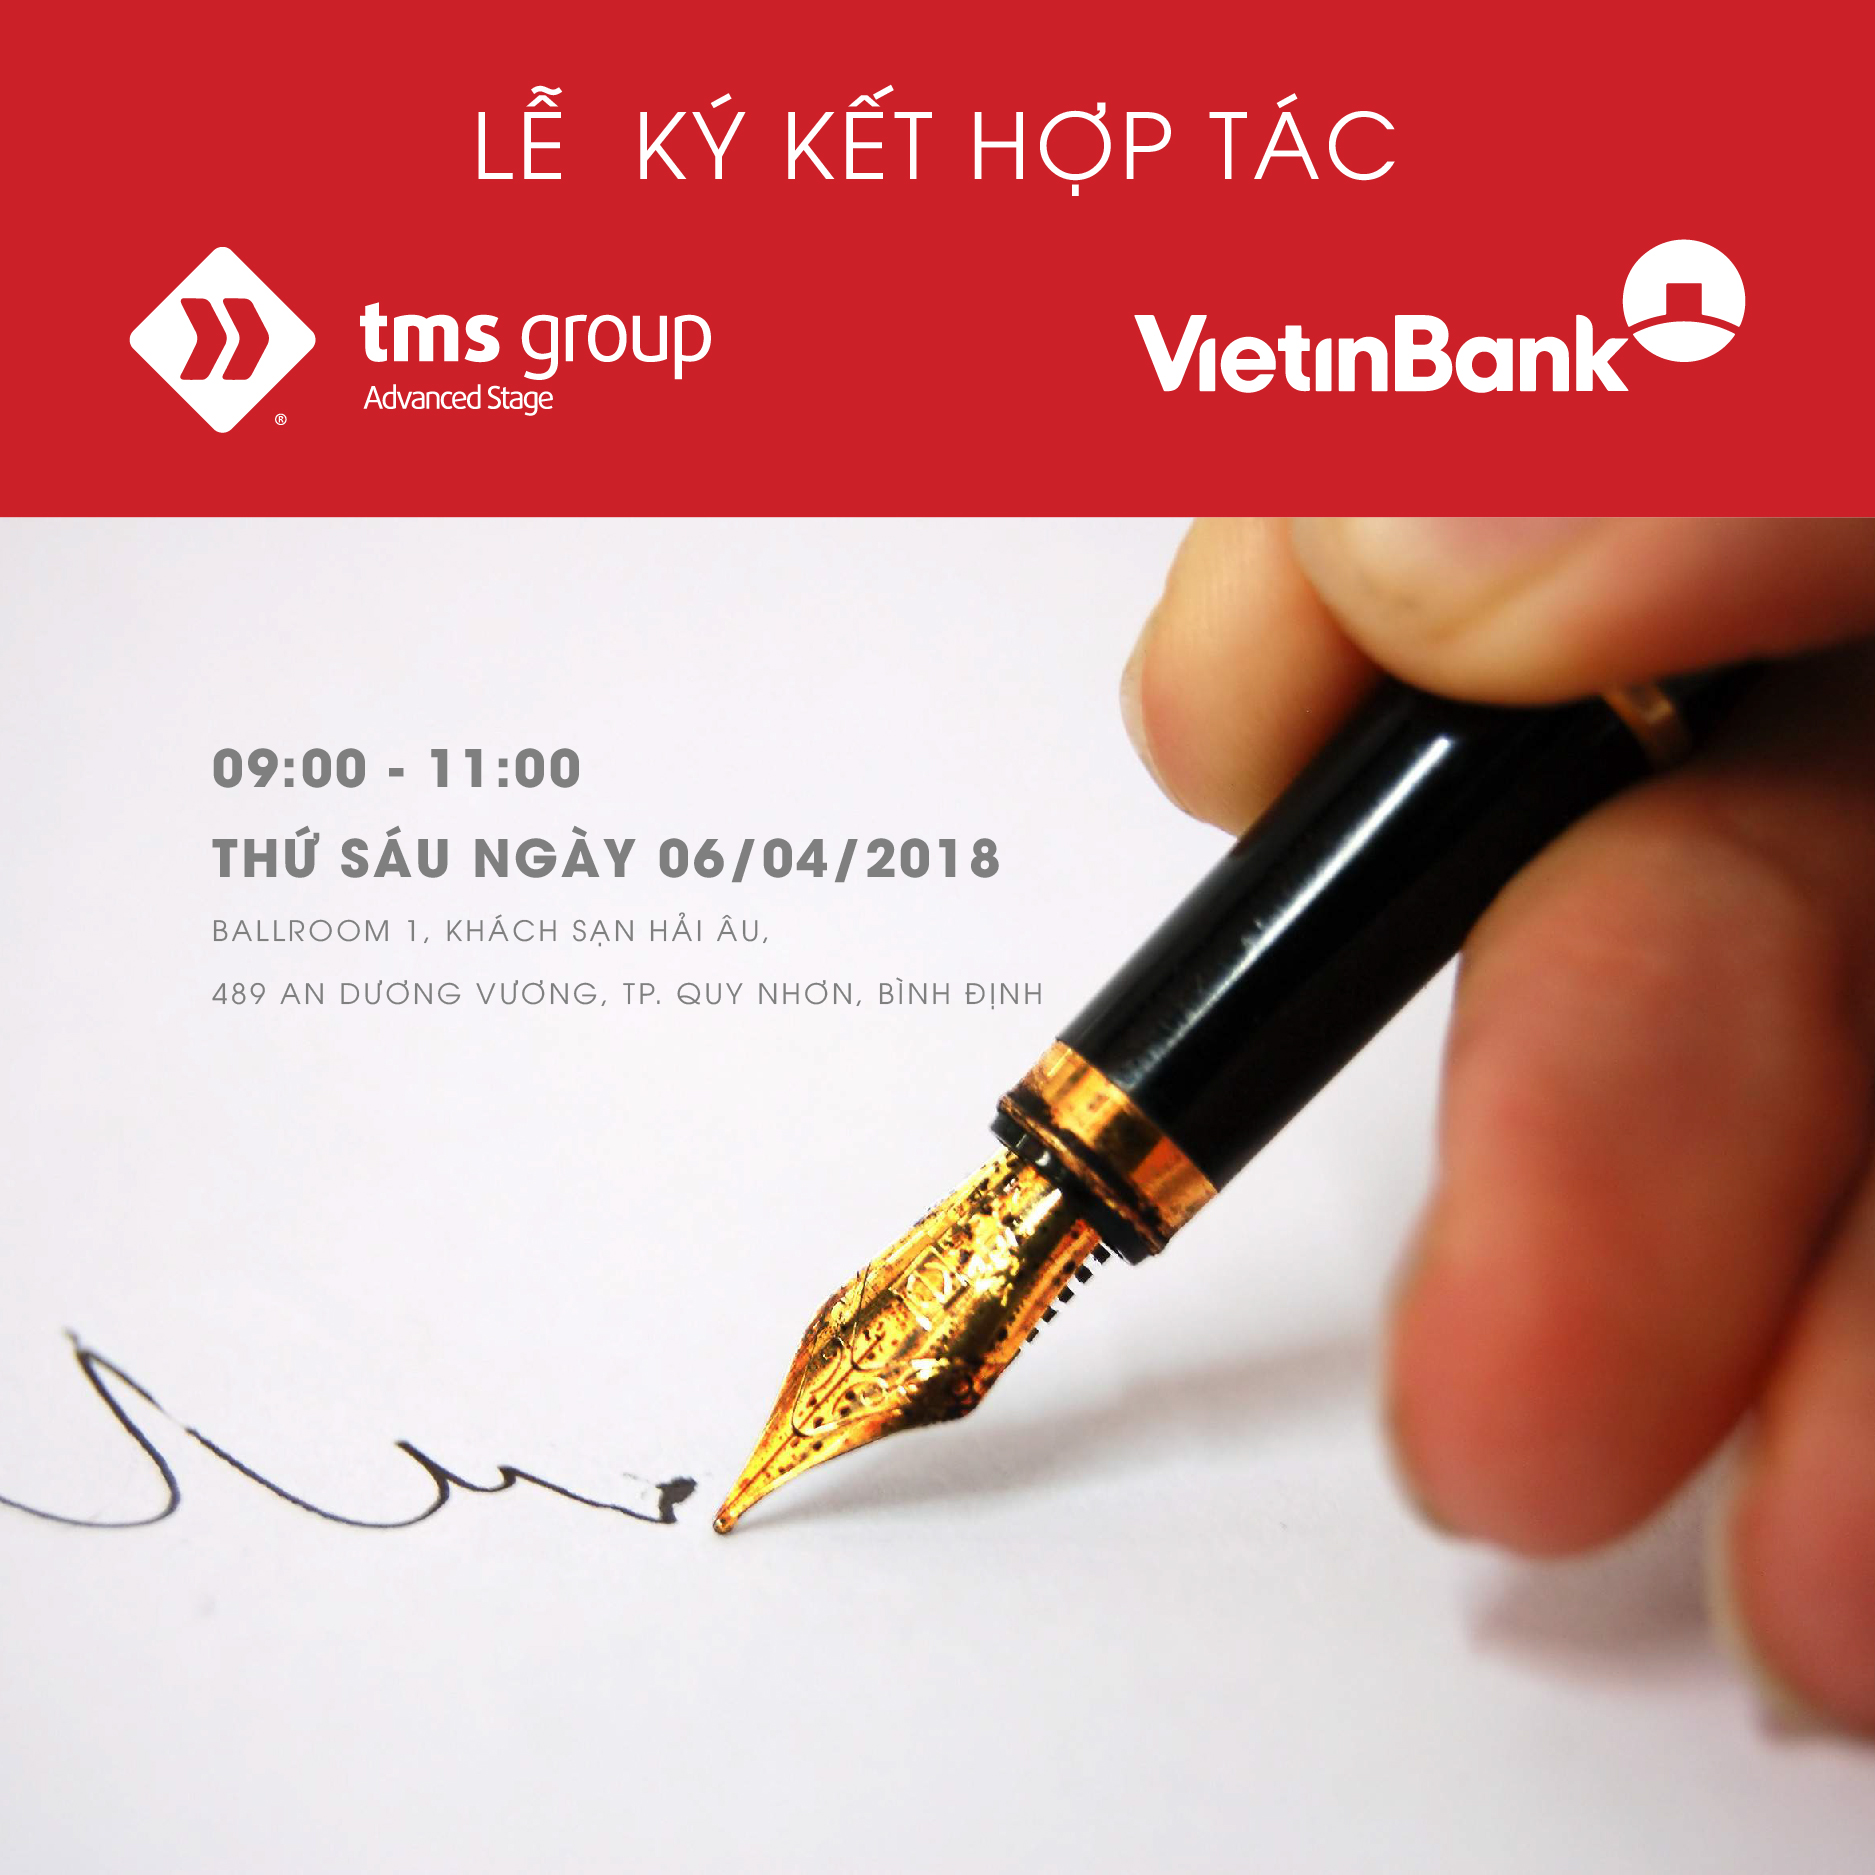 tms-group-ky-hop-tac-vietinbank